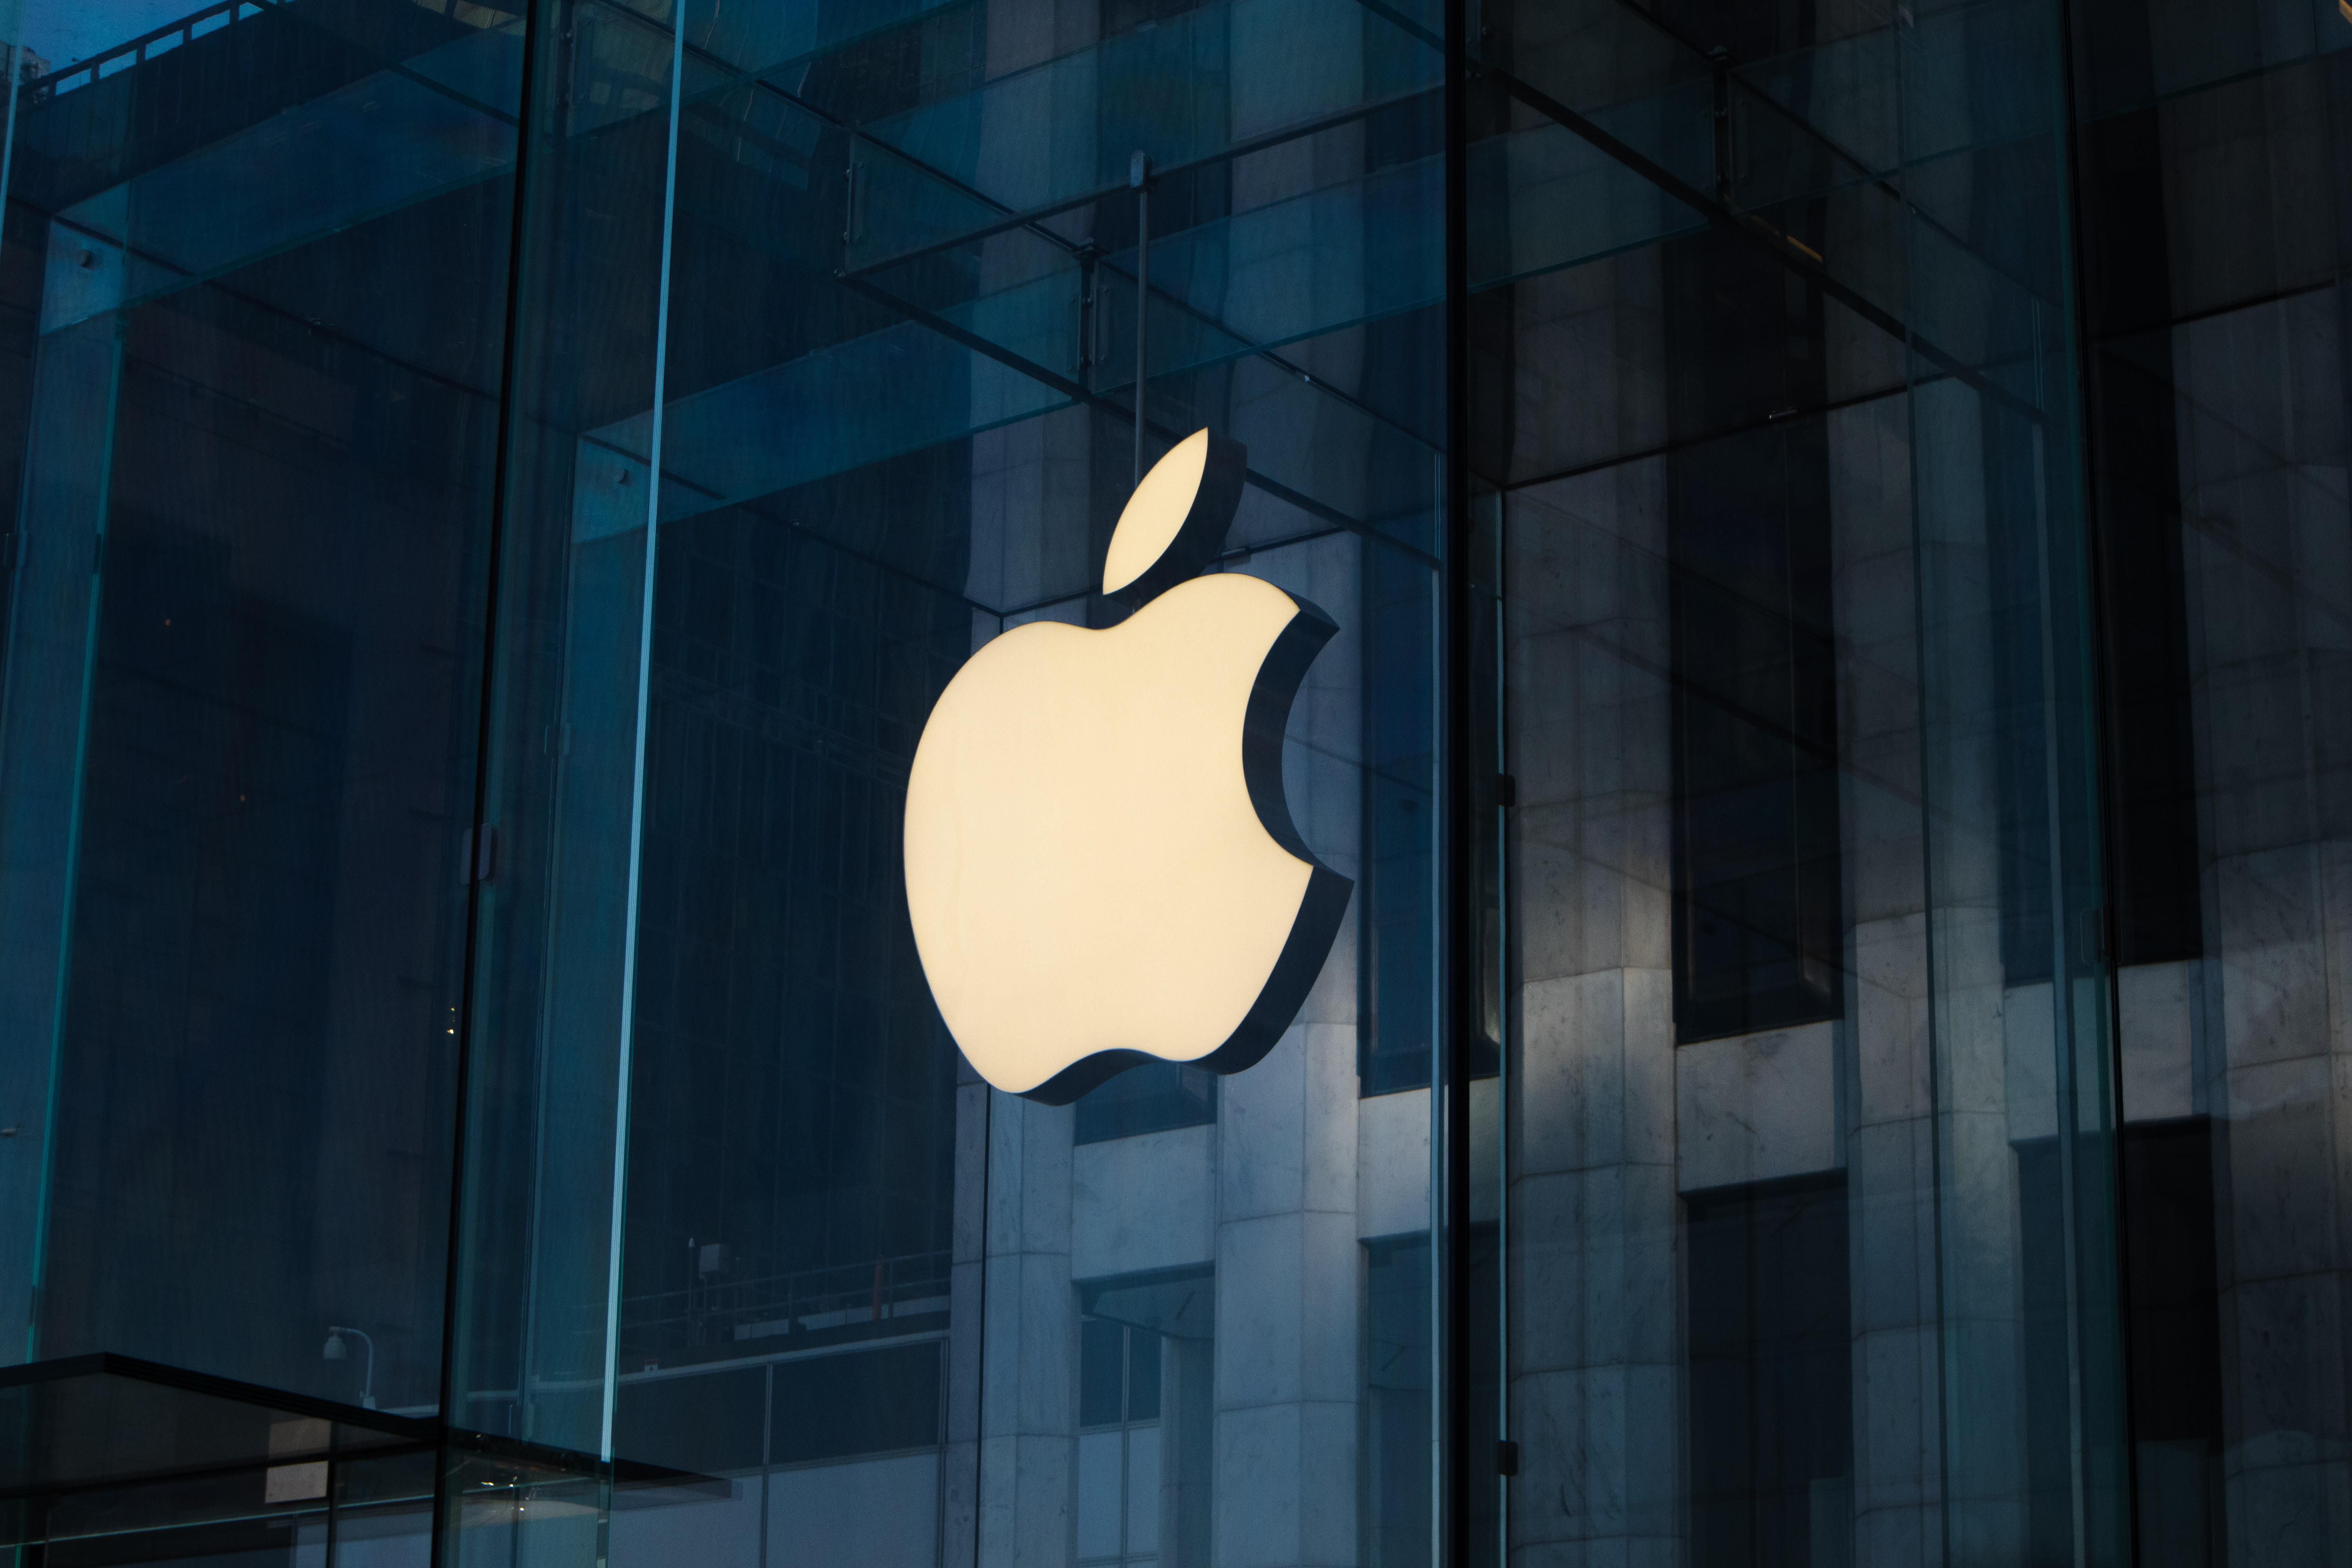 Egy kínai gyártó beelőzte az Apple-t az okostelefonok piacán